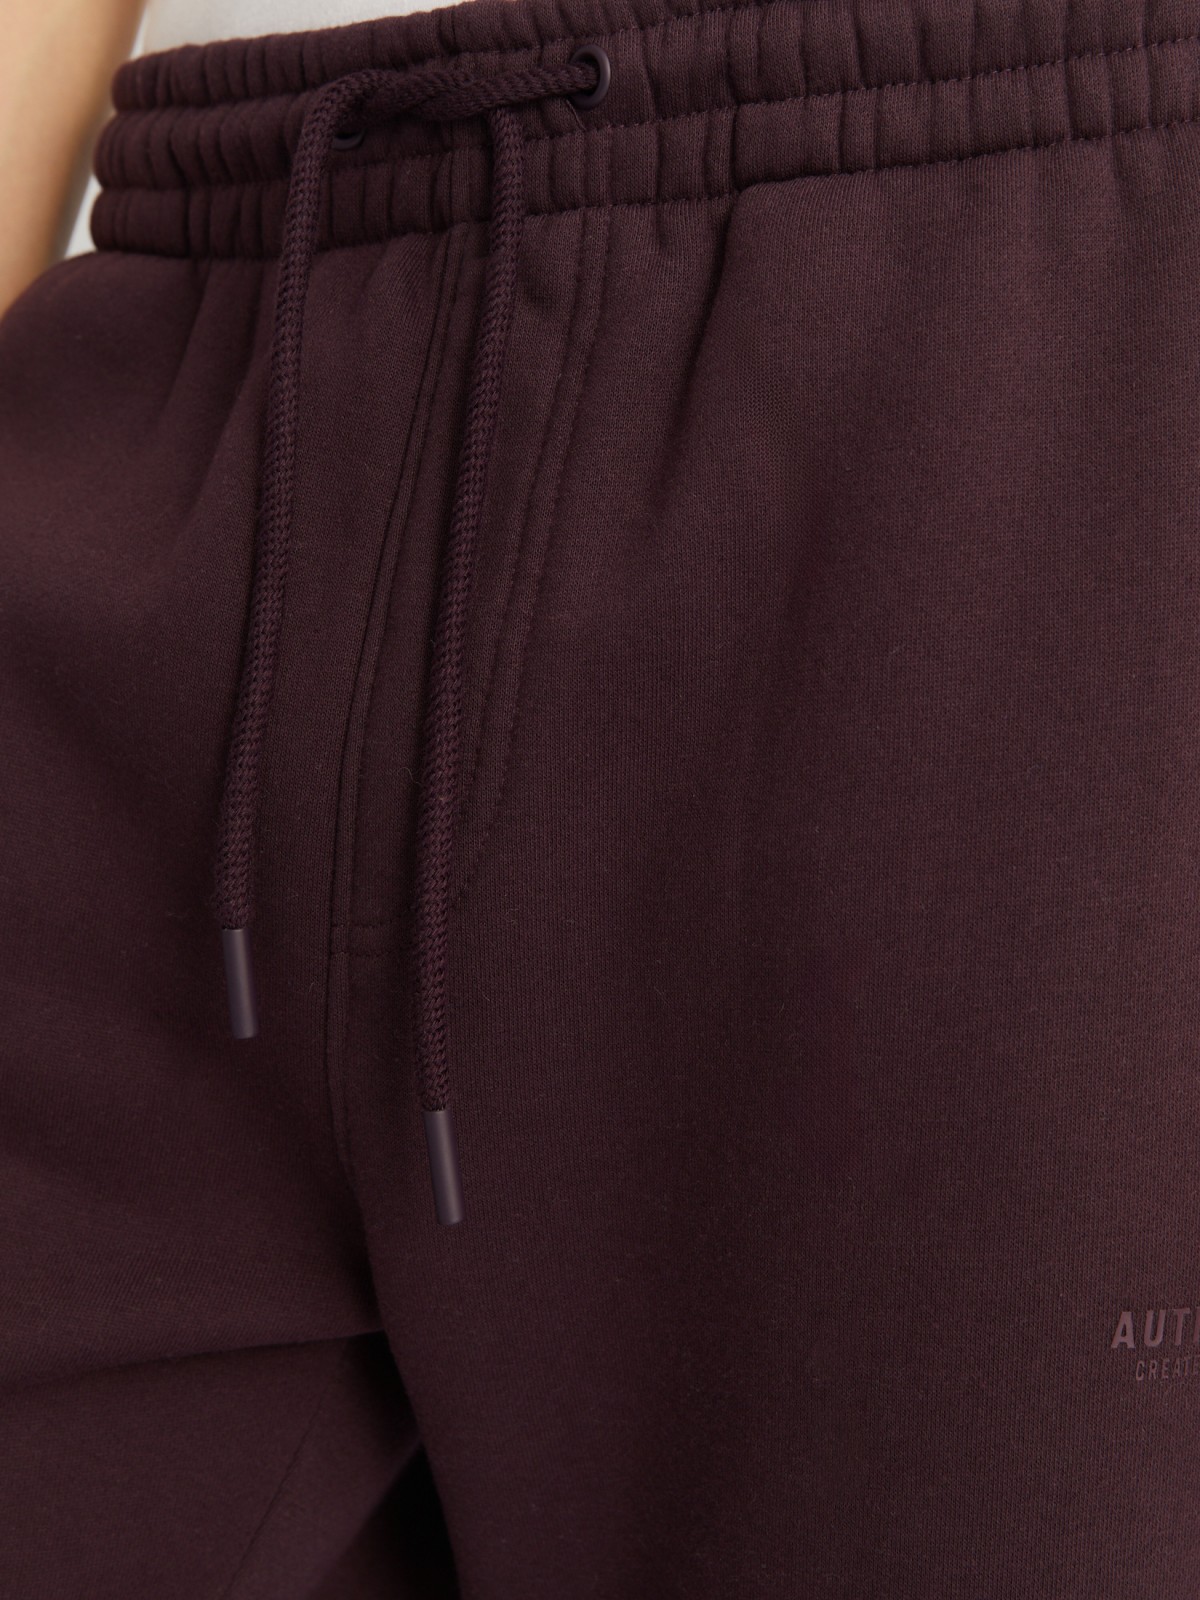 Утеплённые брюки-джоггеры на резинке с начёсом внутри zolla 213437679022, цвет сливовый, размер S - фото 4